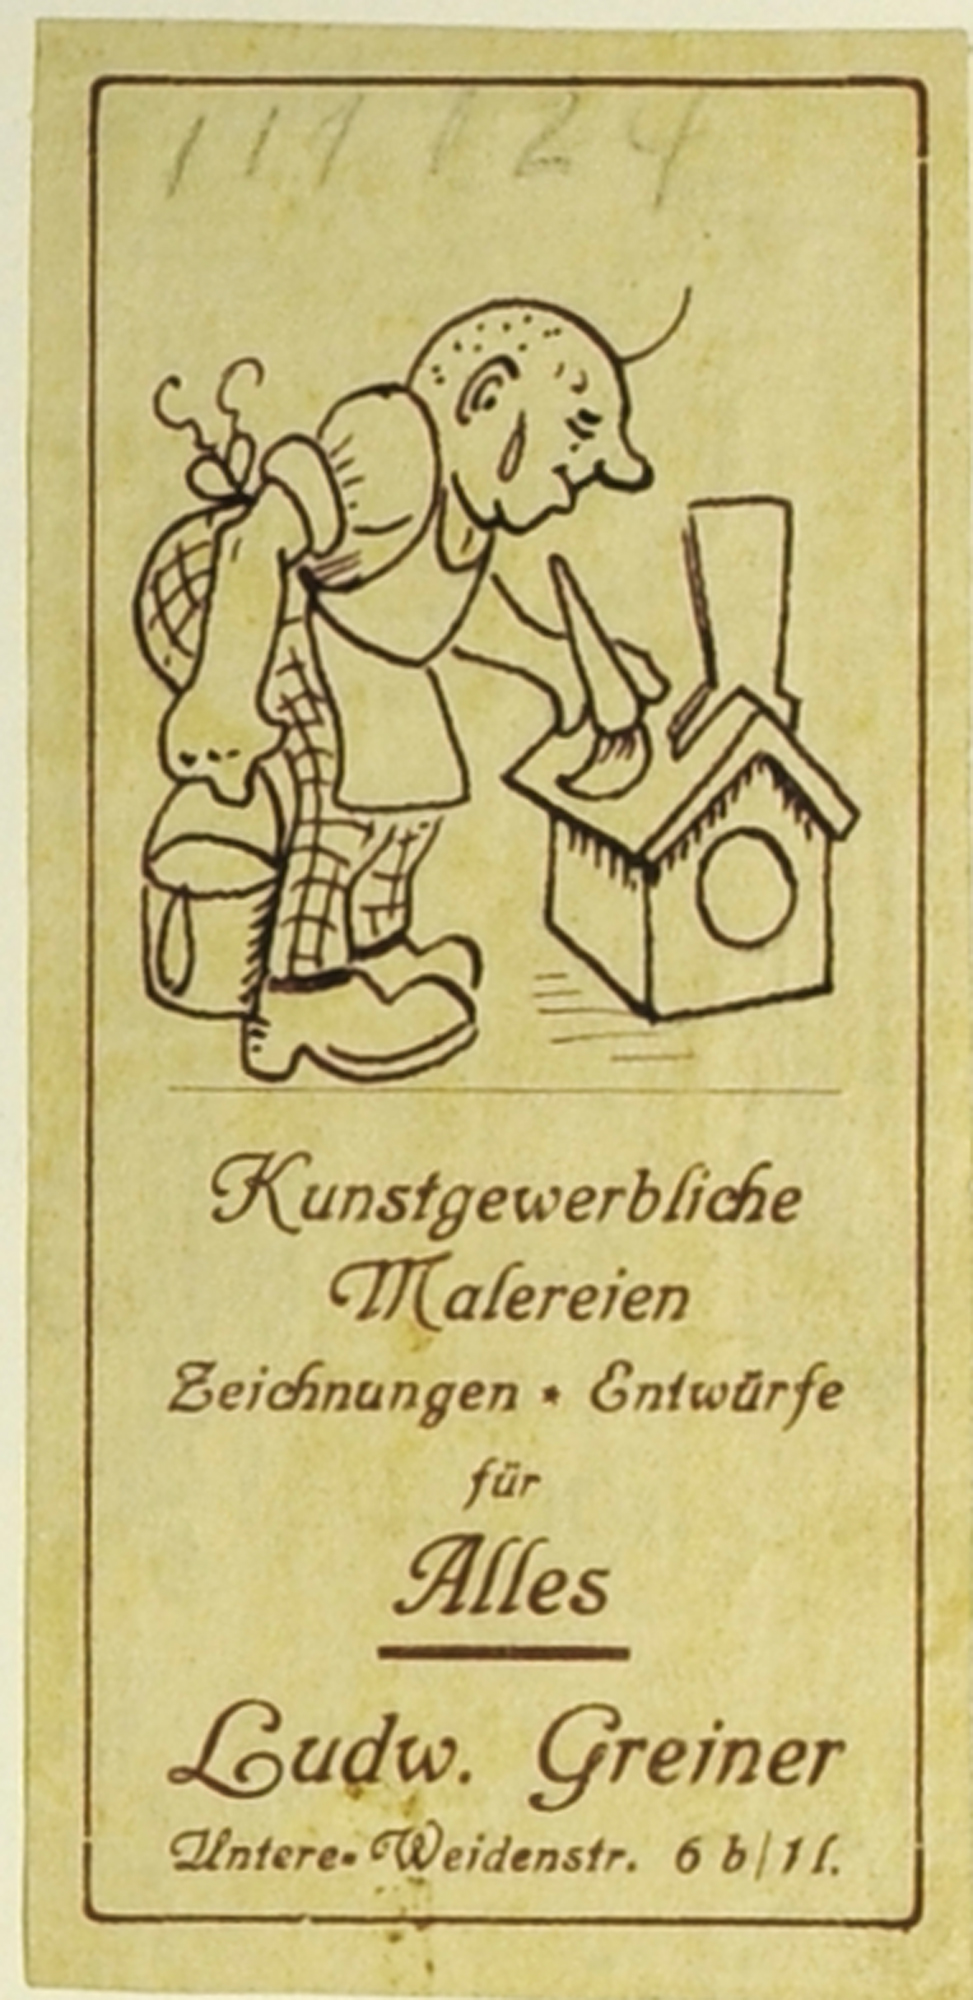 Ludwig Greiner, Handzettel, kunstgewerbliche Malerei